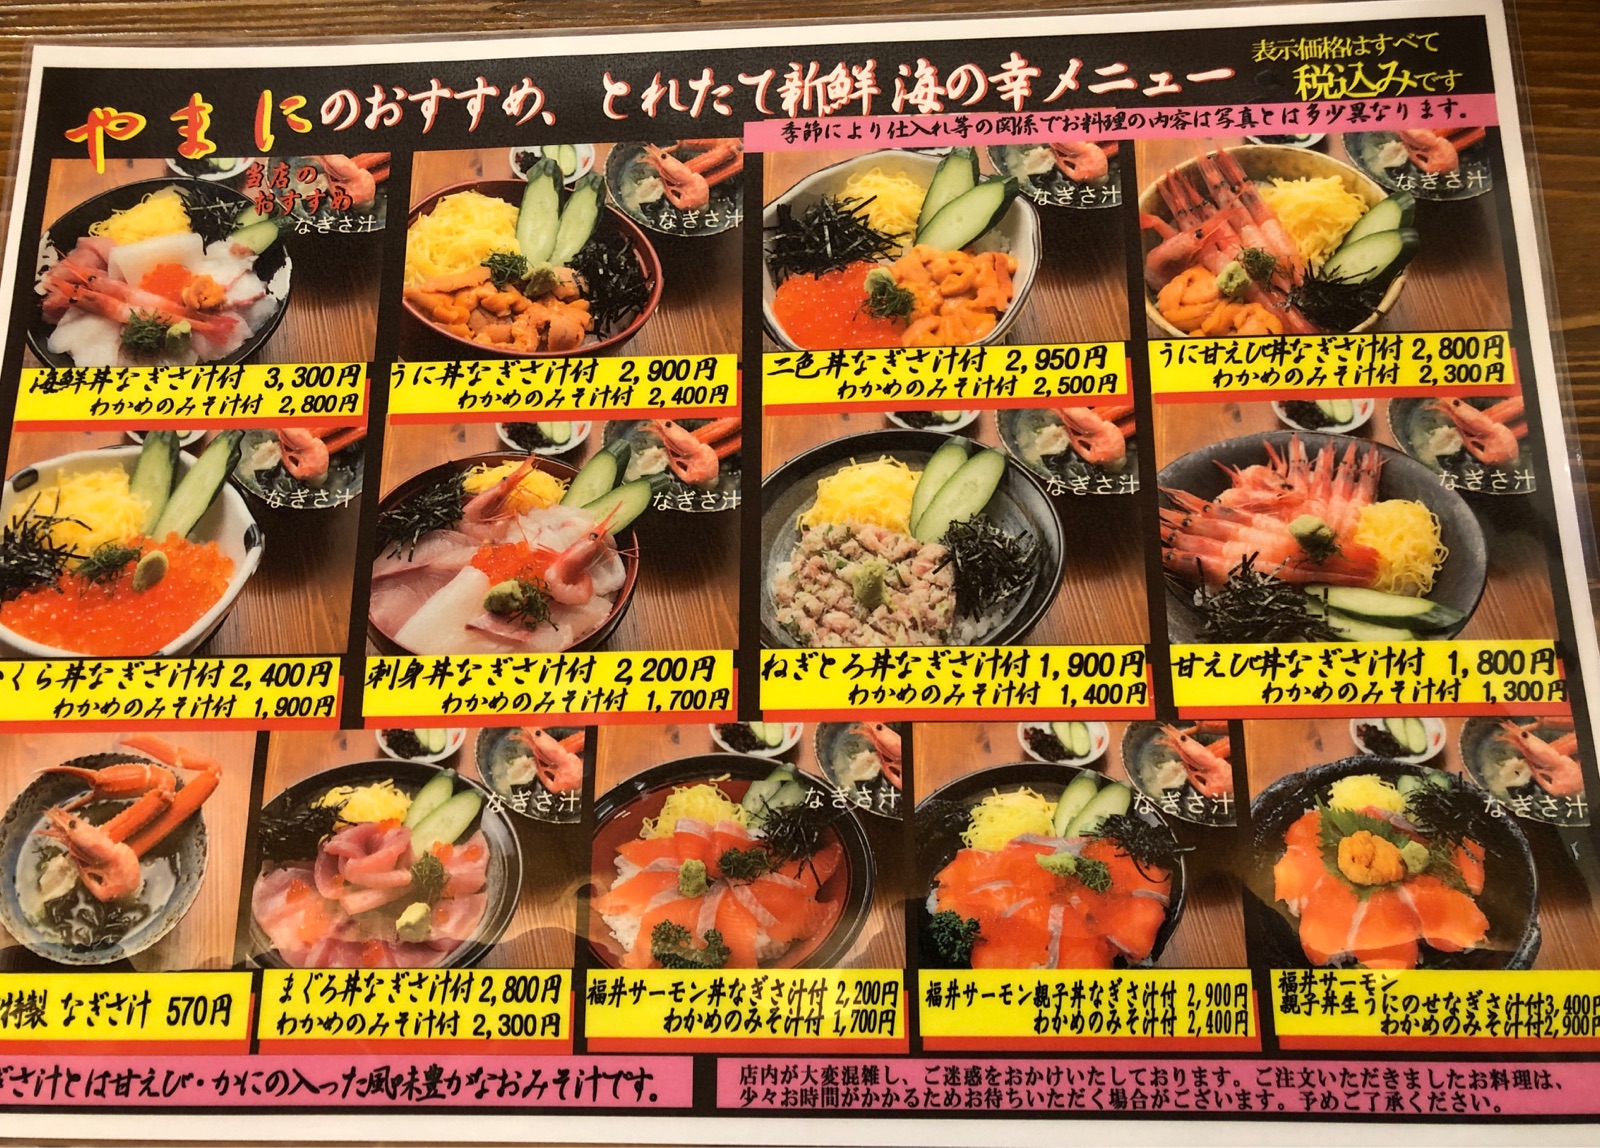 福井県の絶景名所 東尋坊 で絶品海鮮丼を堪能 ホリーポッターとグルメなお部屋